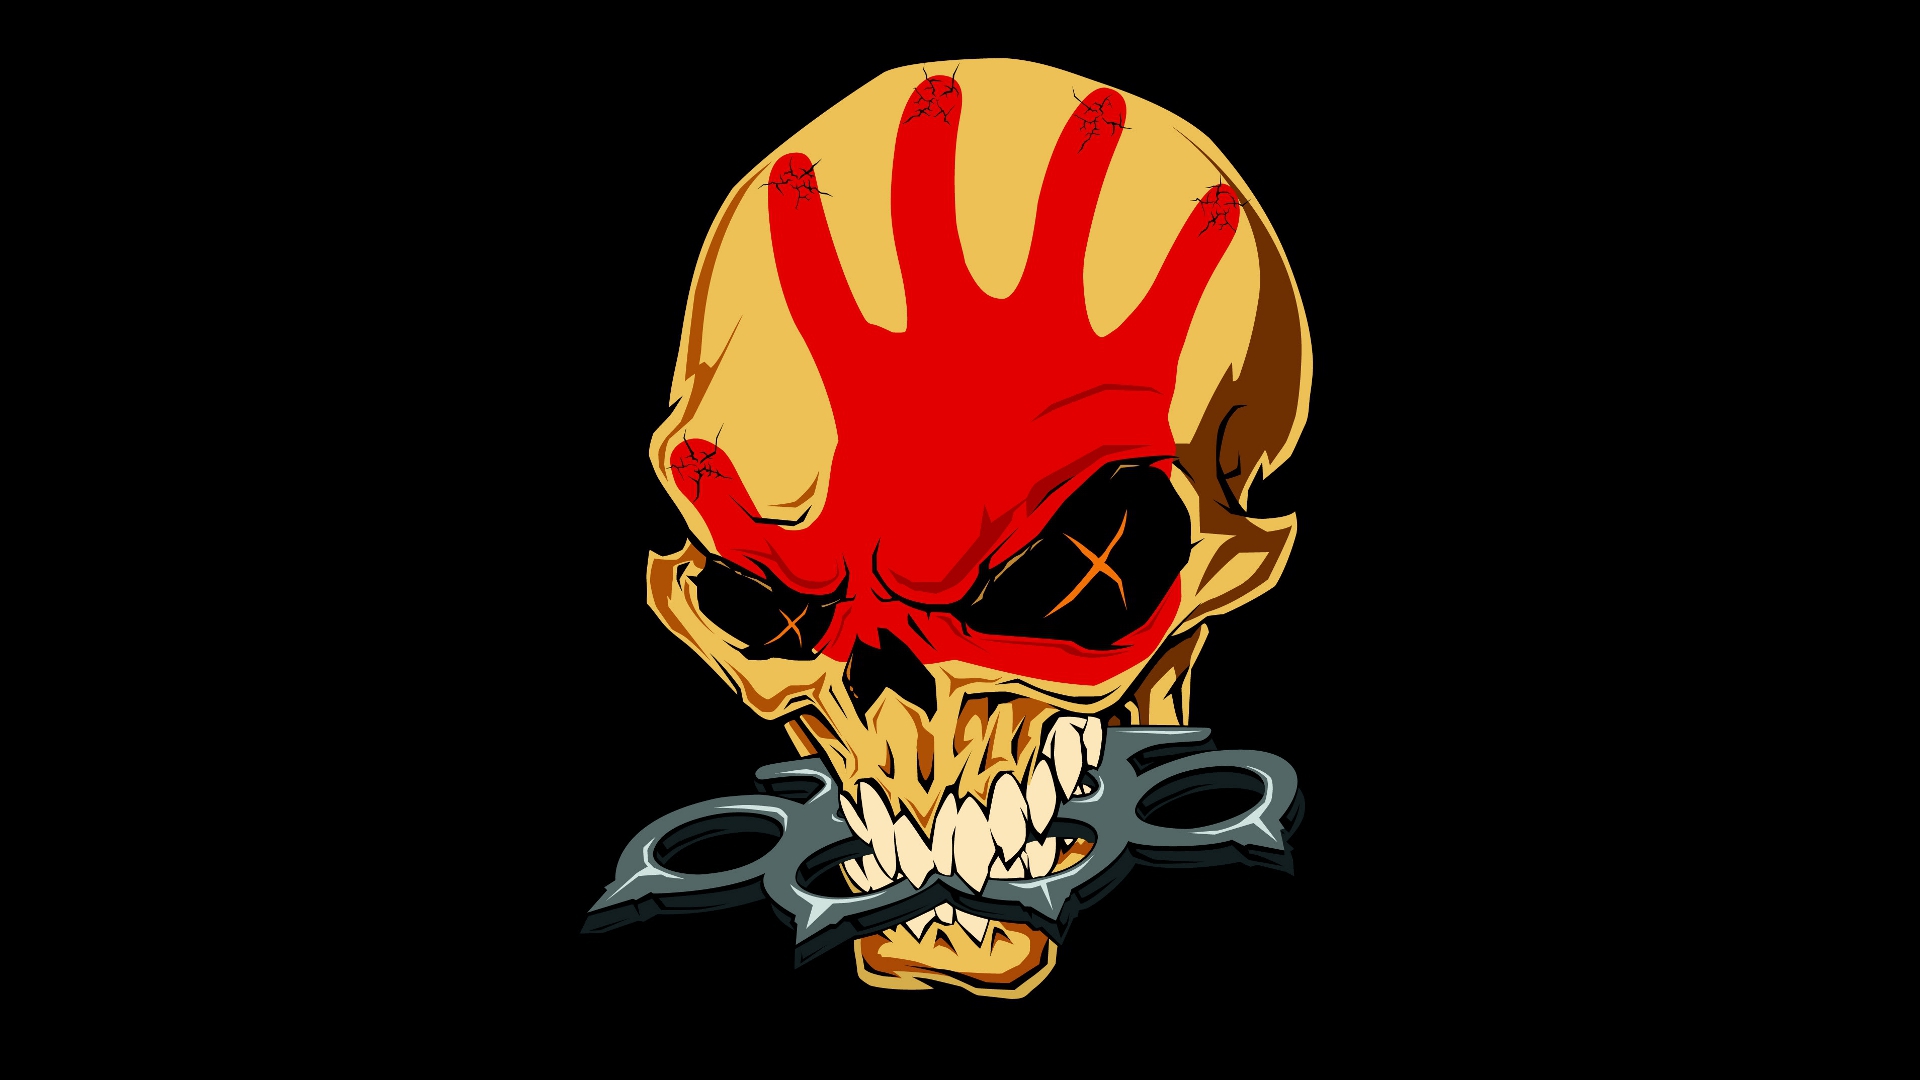 Collectie Band Music Verenigde Staten Five Finger Death Punch